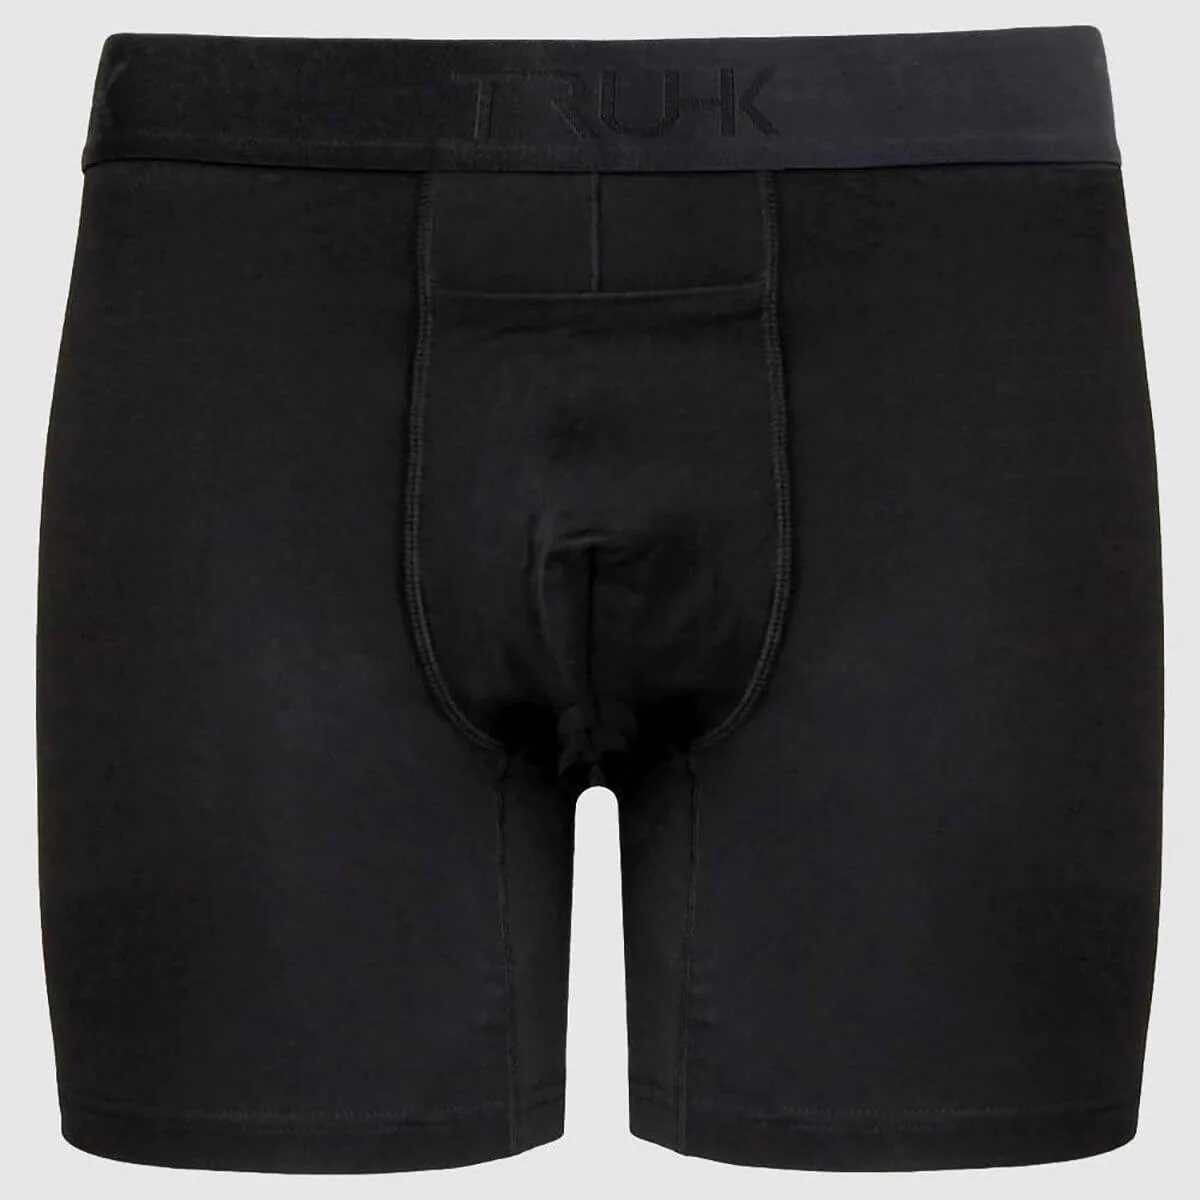 3 Best FTM Packer Underwear. FTM (female to male) packer underwear